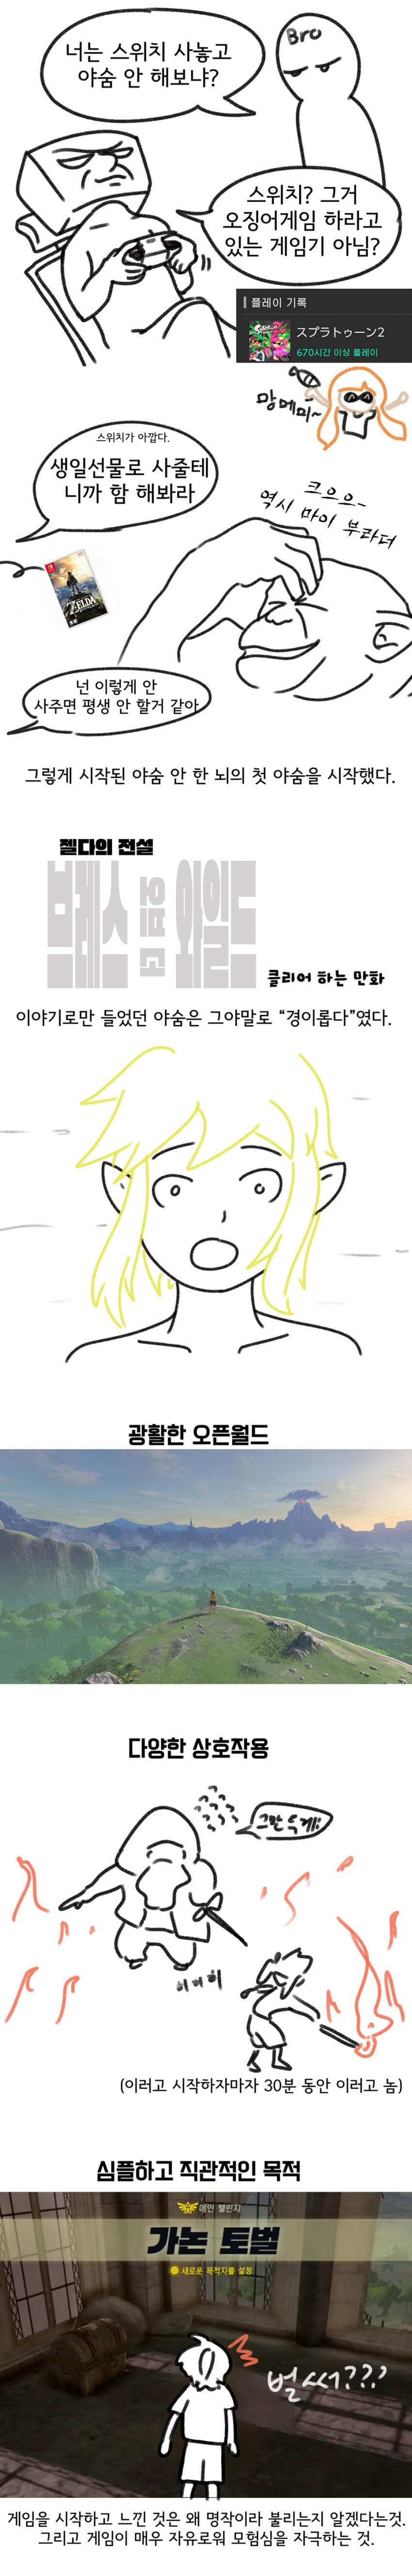 젤다 야숨 깨는 만화 - 닌텐도 마이너 갤러리